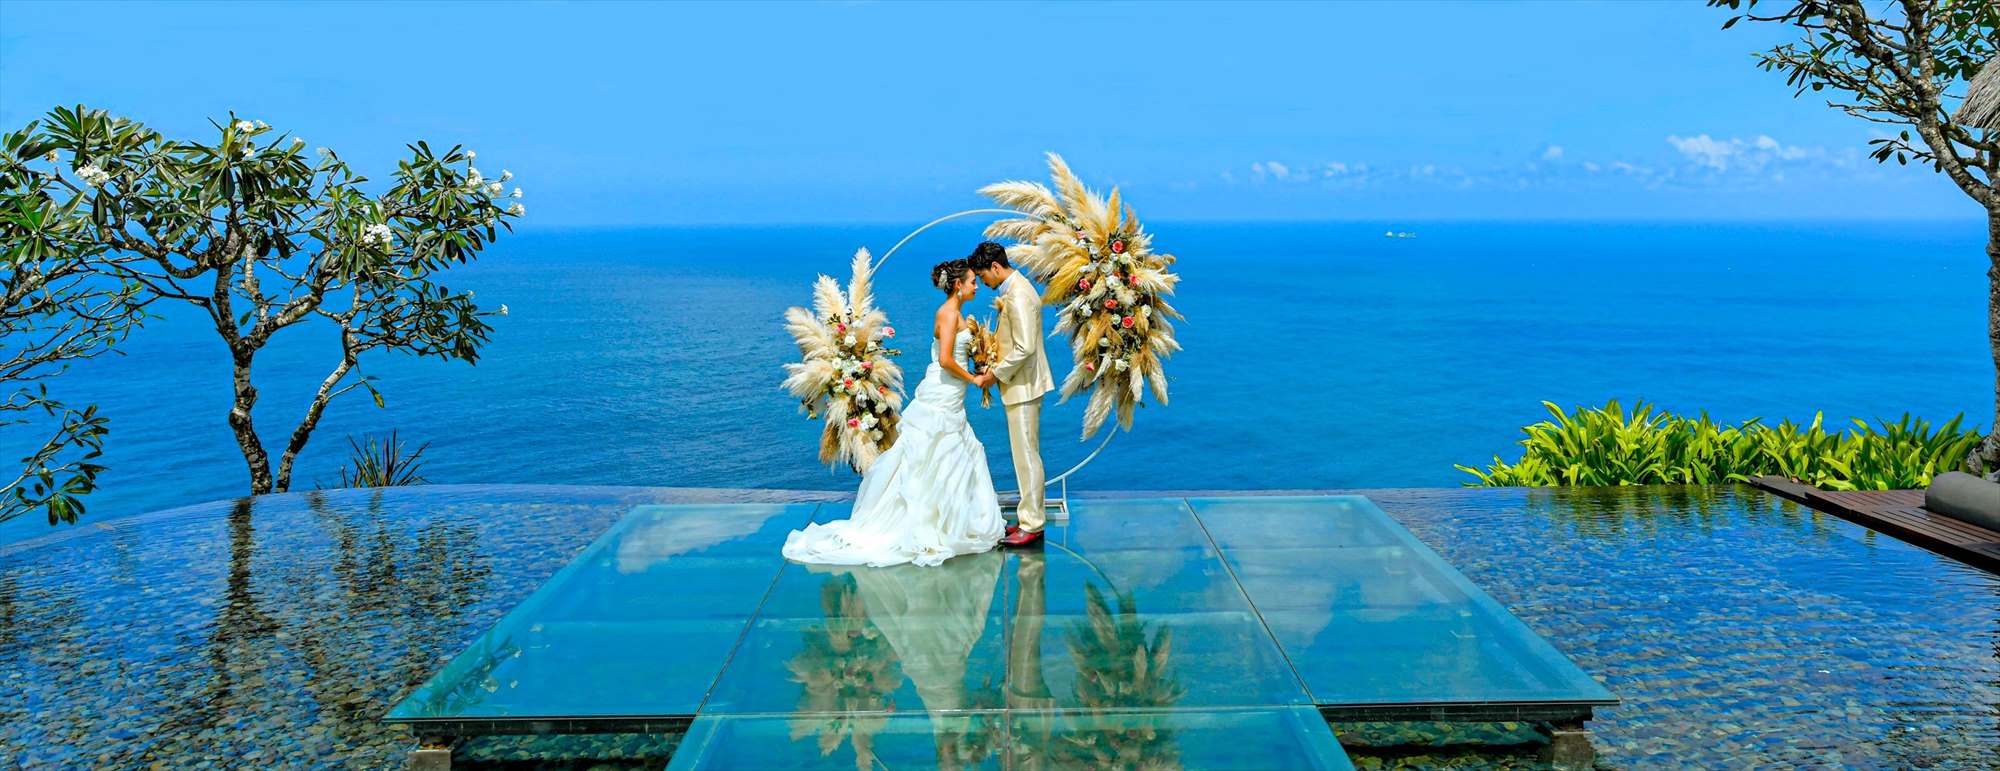 ブルガリ・リゾート　バリ島ウェディング・挙式・結婚式│Bulgari Resort Bali Wedding